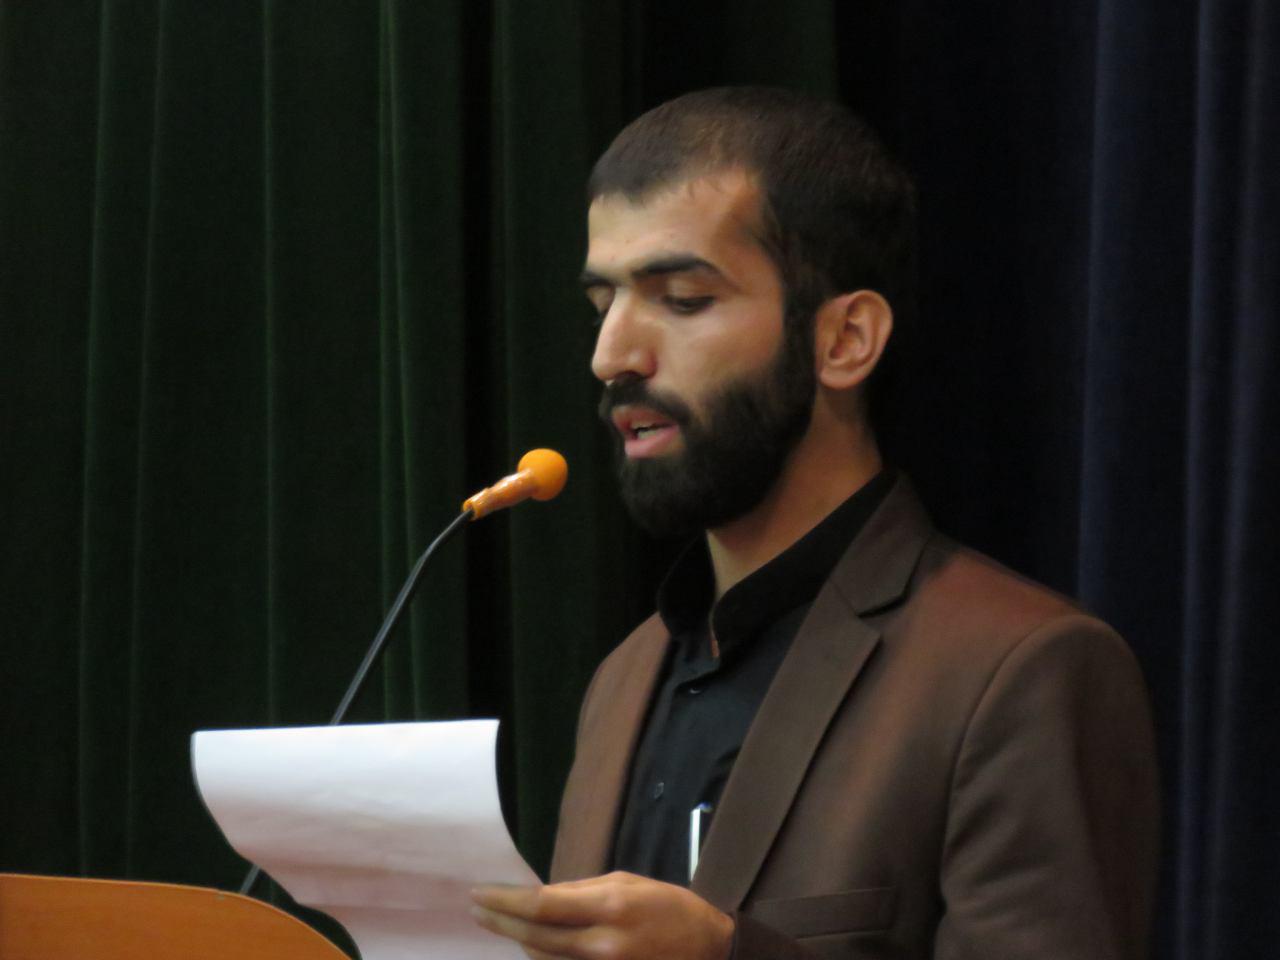 سخنرانی استاد حسن عباسی در ارومیه - مهندسی سیاسی و دارو دسته نیویورکی‌ها